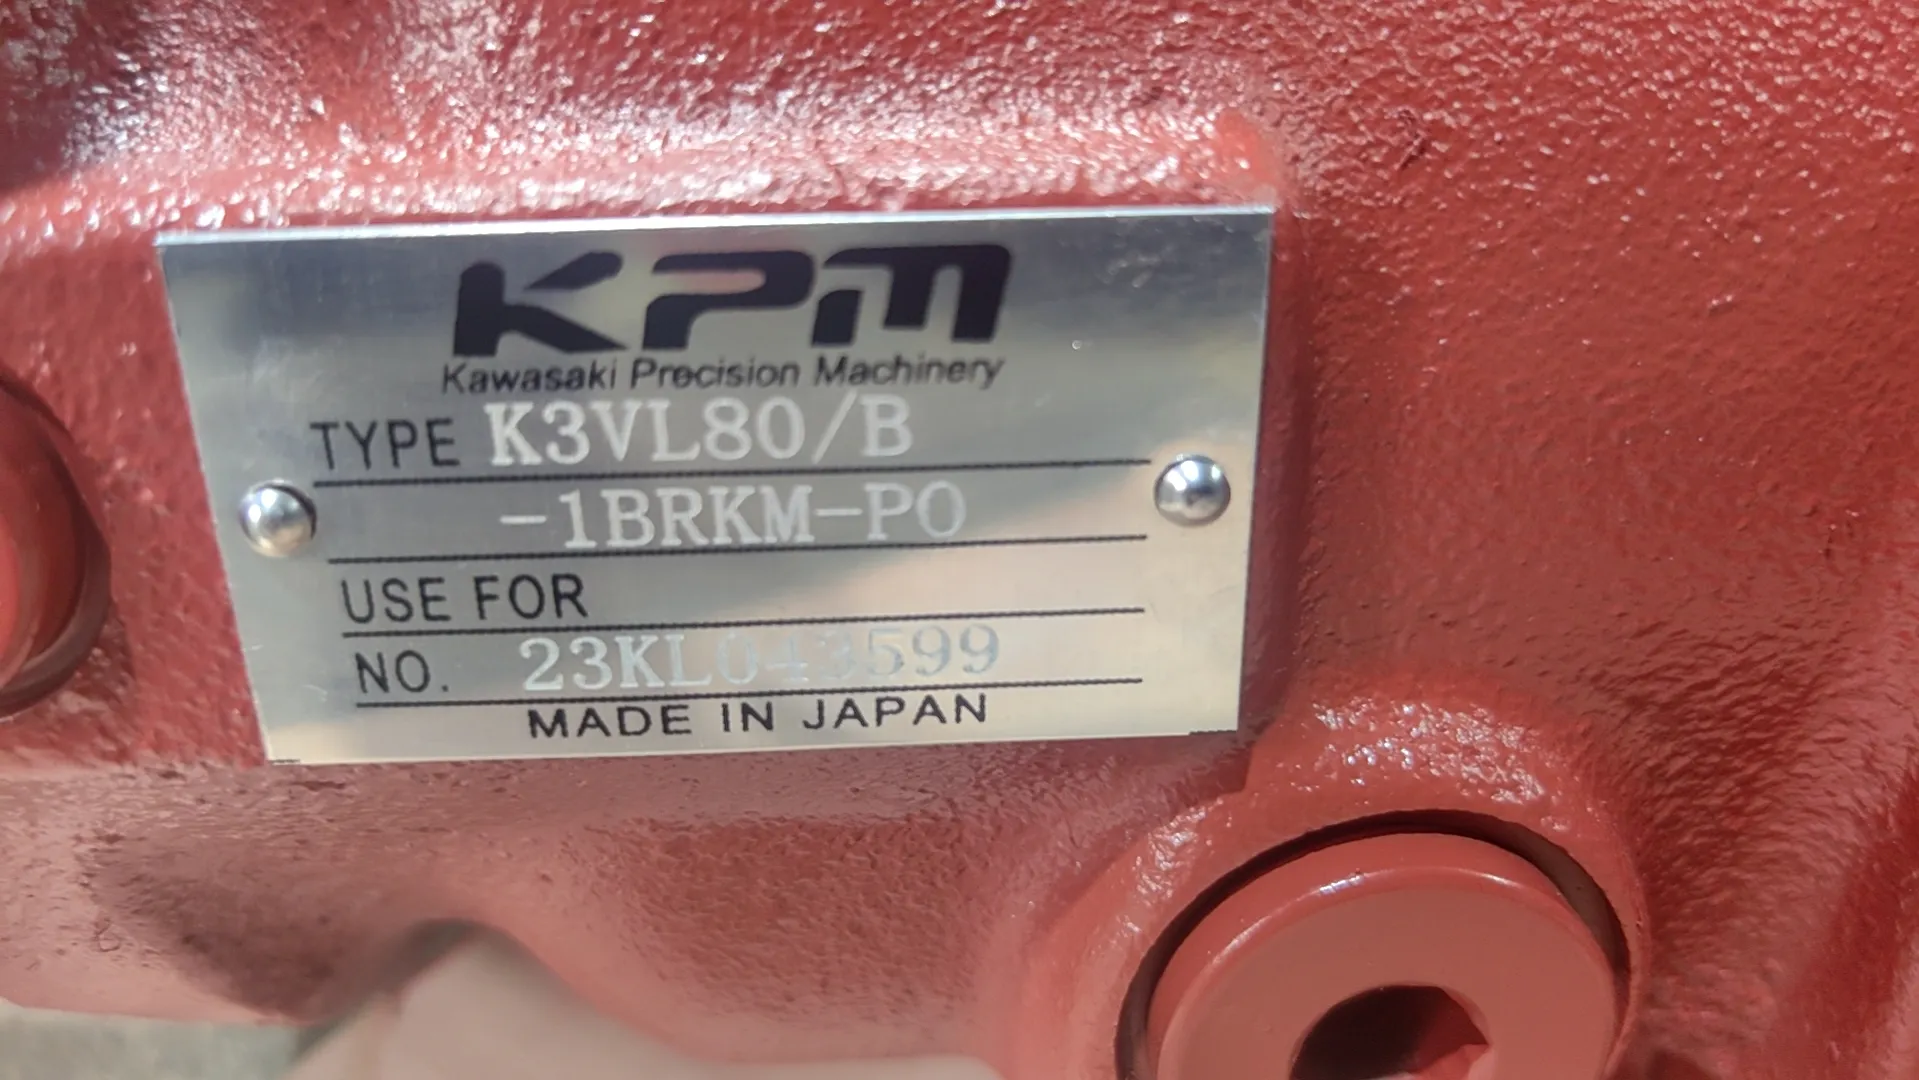 뜨거운 판매 KPM 피스톤 펌프 K3VL K3VL28 K3VL45 K3VL80 K3VL140 K3VL200 시리즈 K3VL80/B-1BRKM-PO 가와사키 고압 플런저 펌프